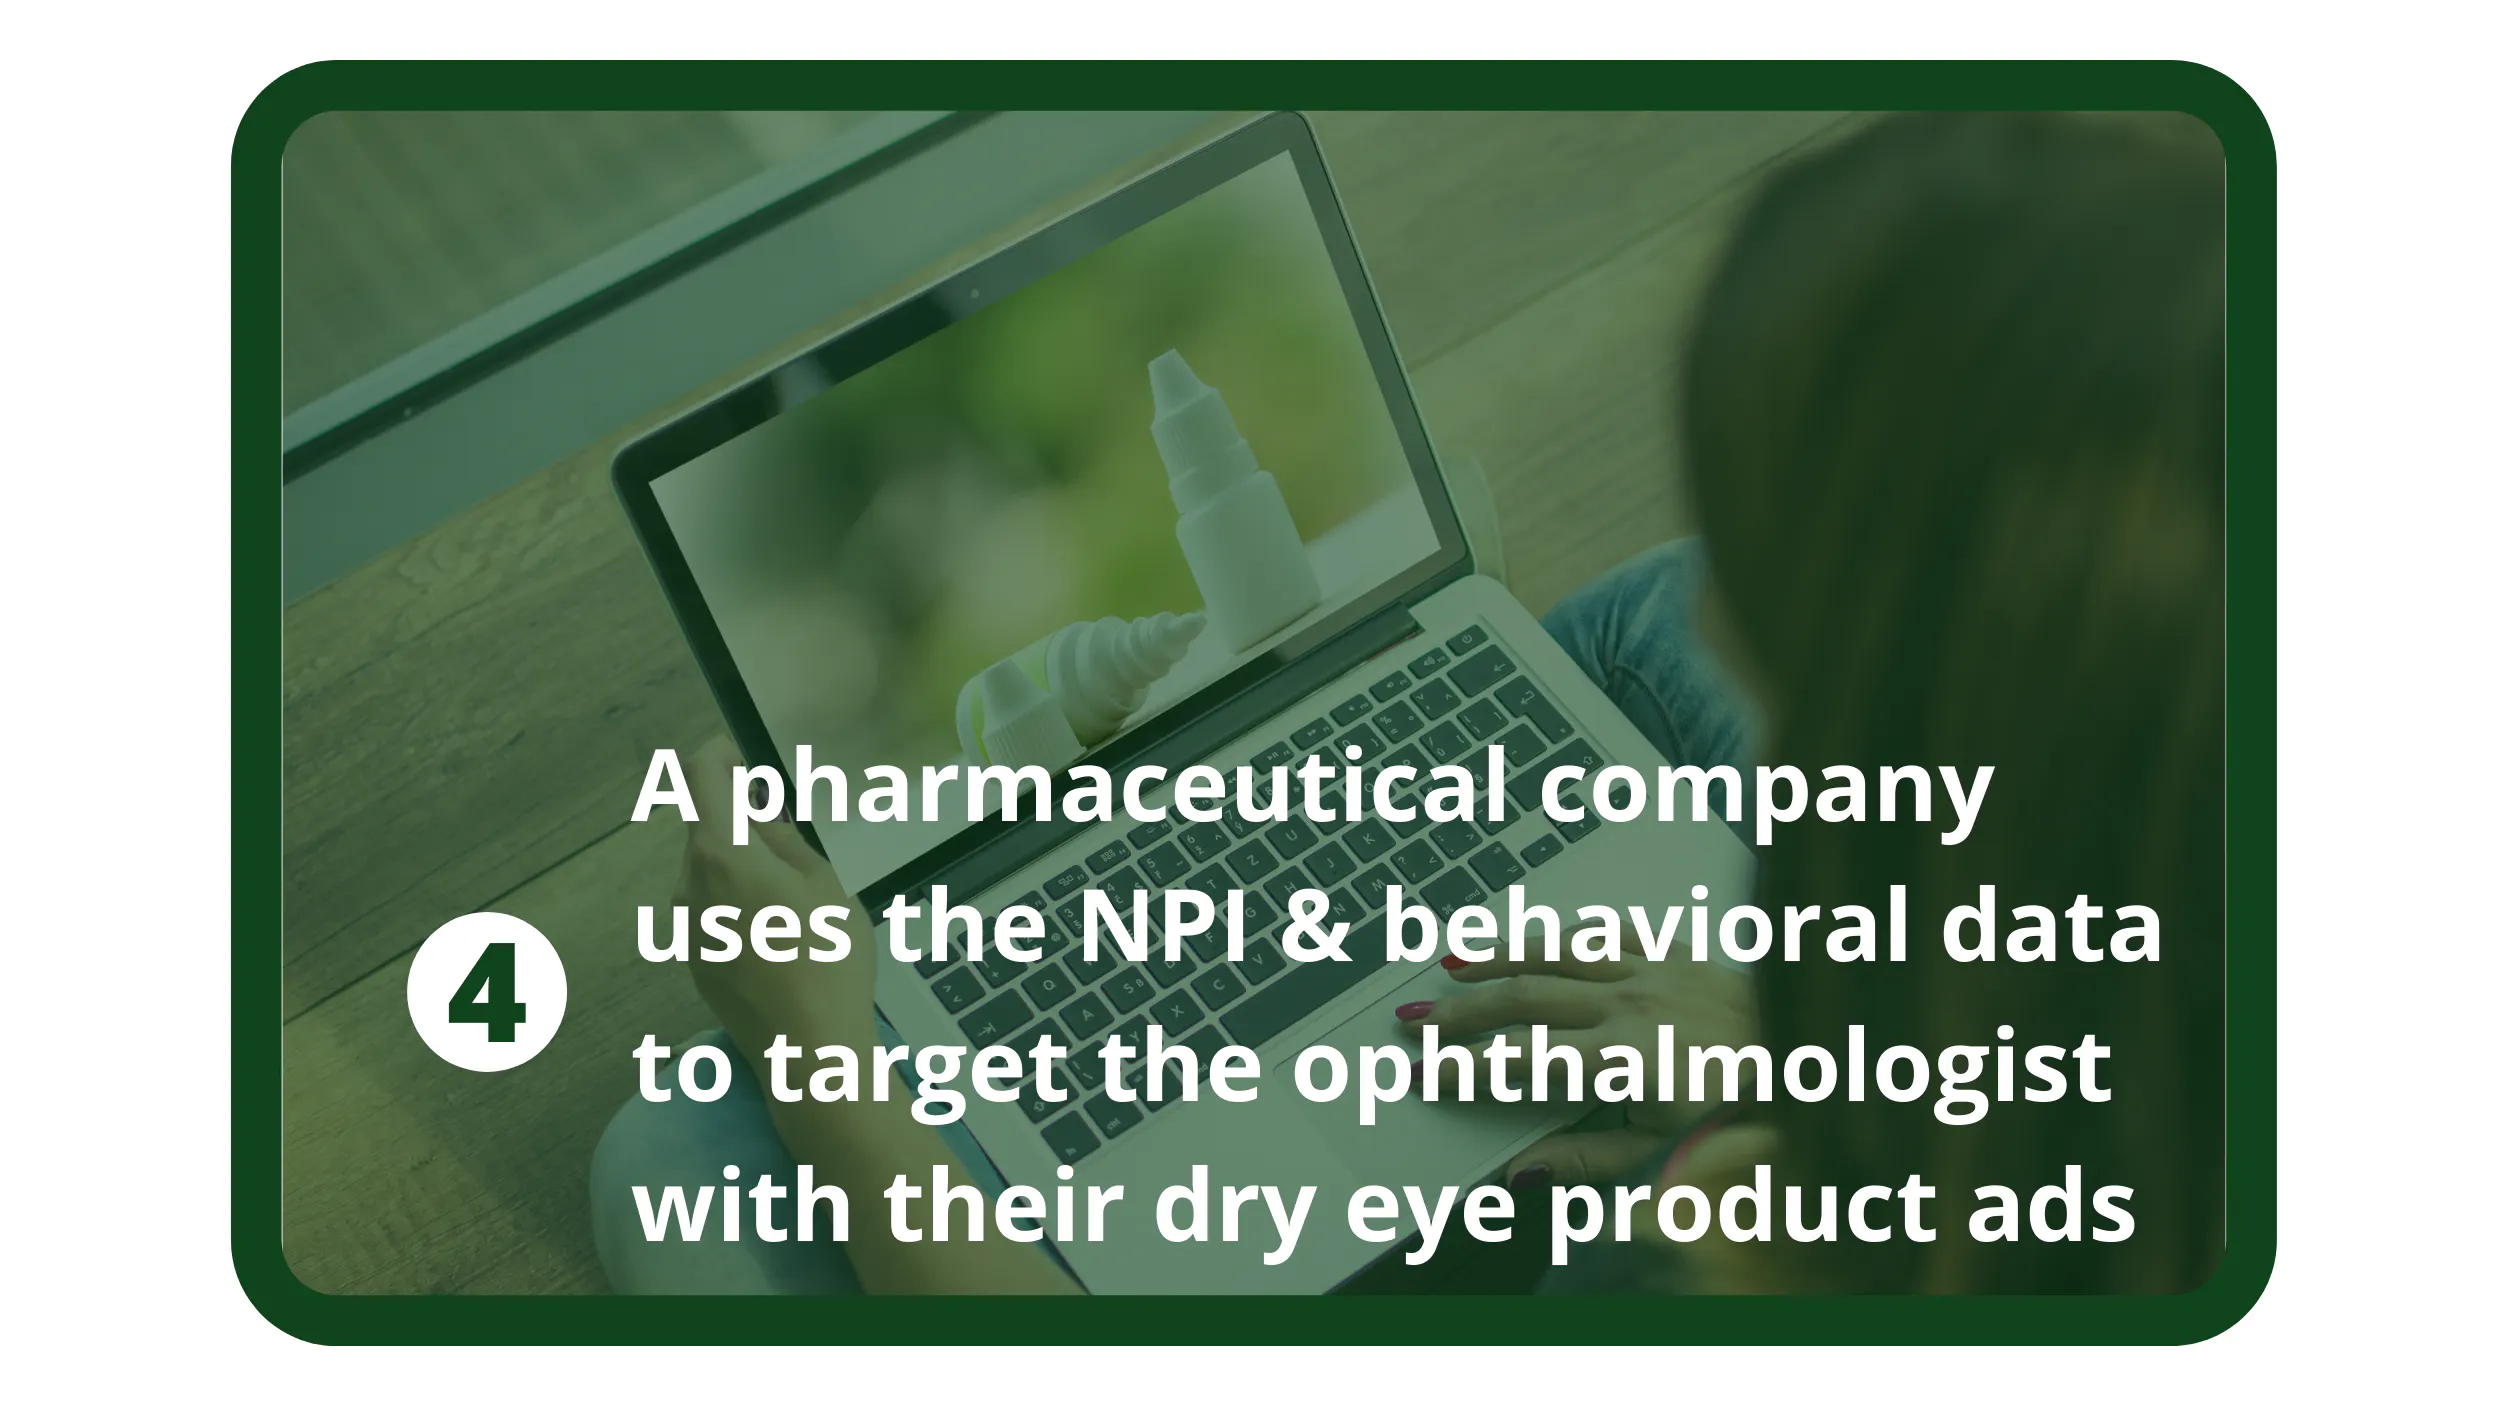 Ein Pharmaunternehmen nutzt die NPI und Verhaltensdaten, um den Augenarzt mit Werbung für Produkte für trockene Augen anzusprechen